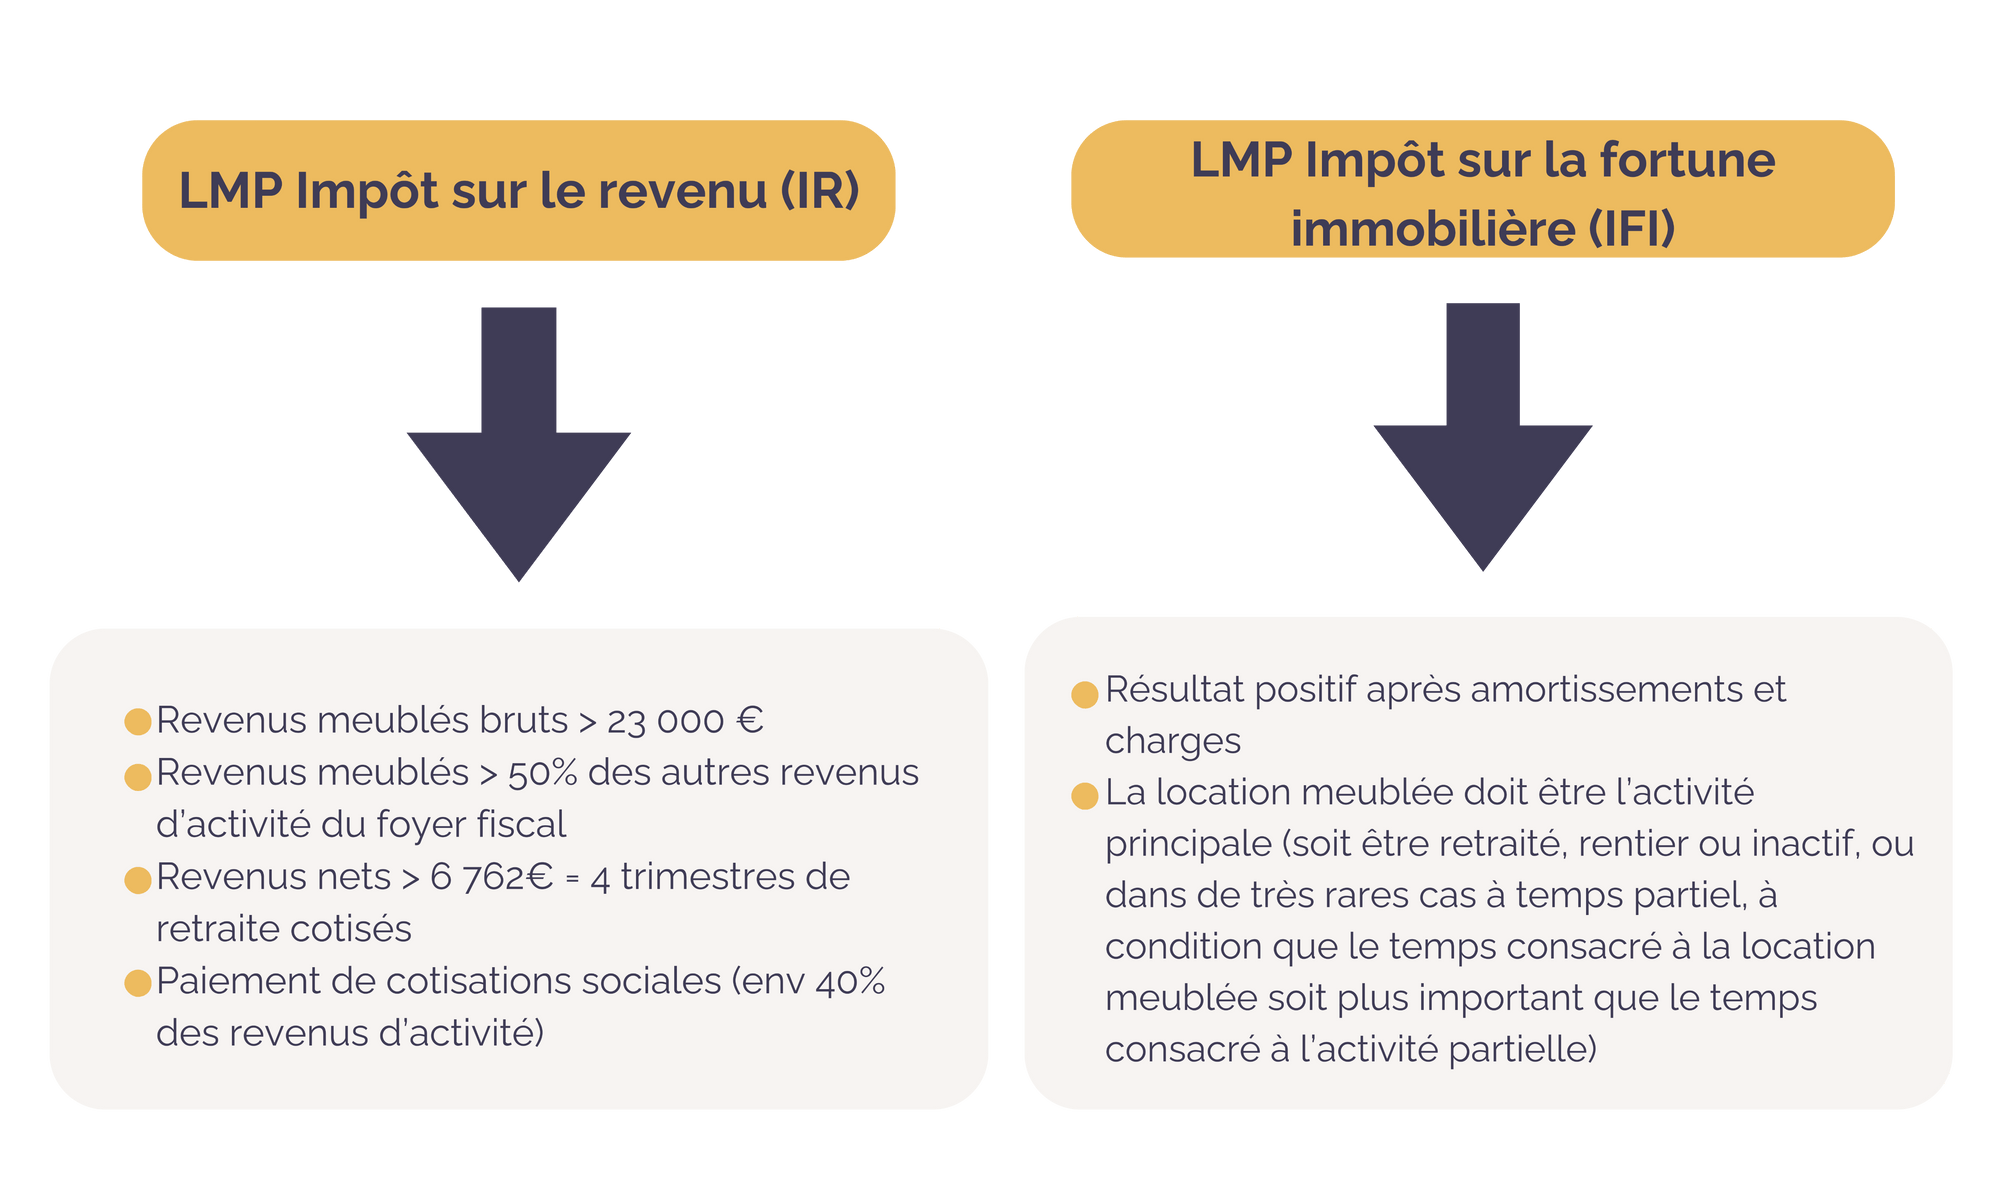 Comparaison IR et IFI LMP